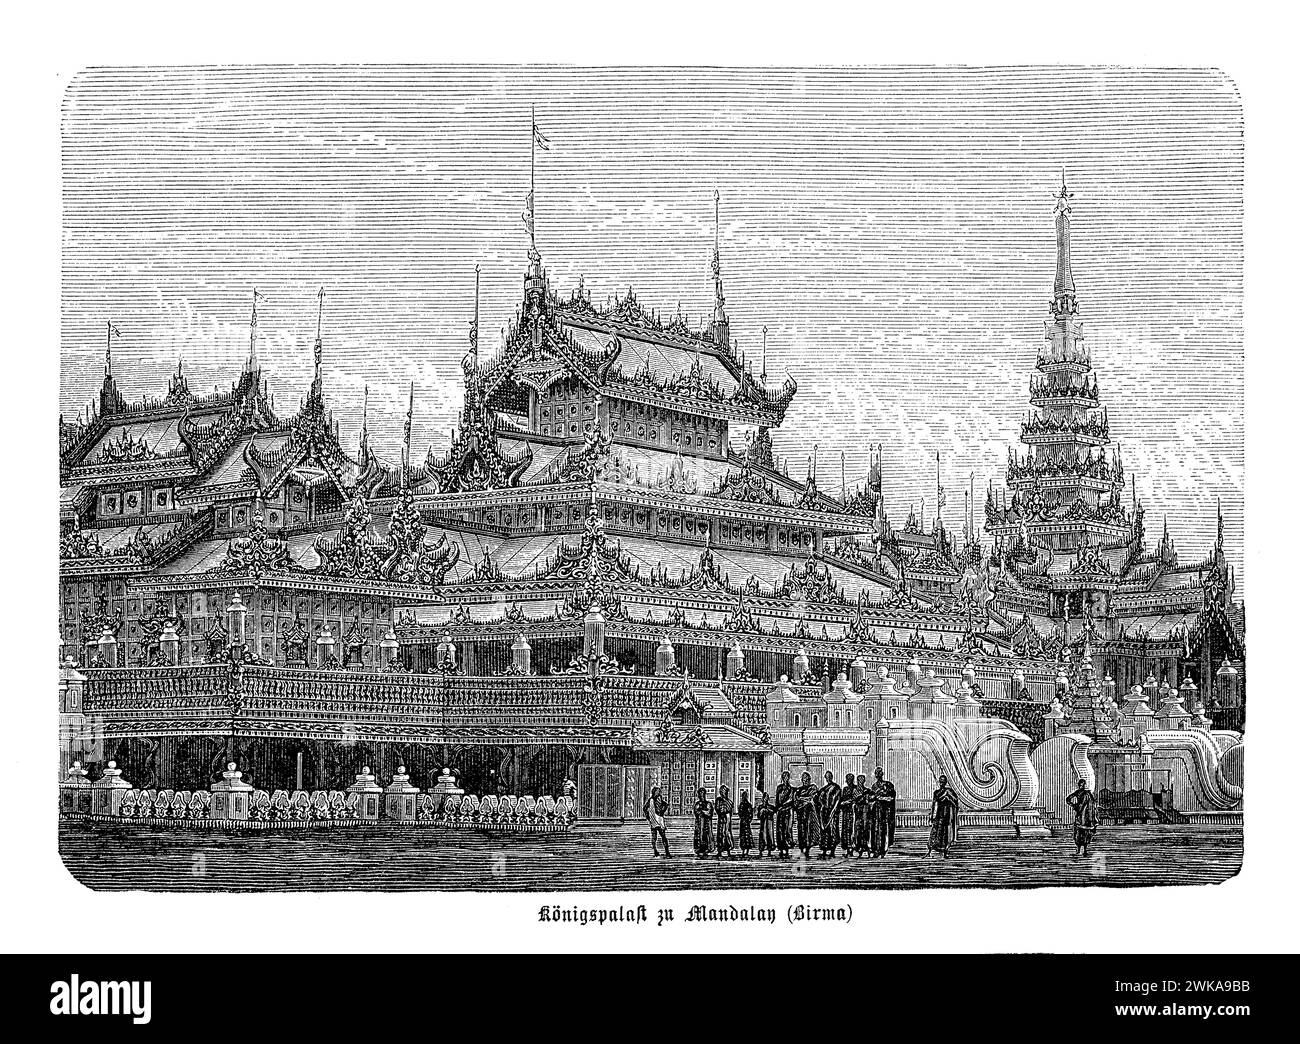 Il Palazzo reale di Mandalay è un esempio impressionante di architettura birmana del XIX secolo, caratterizzato da tradizionali edifici in legno circondati da alte mura e un fossato. Era il centro culturale e amministrativo del regno, che mostrava squisita maestria birmana, intricate incisioni e un layout che segue il tradizionale design del palazzo birmano, con edifici per diverse funzioni reali e statali Foto Stock